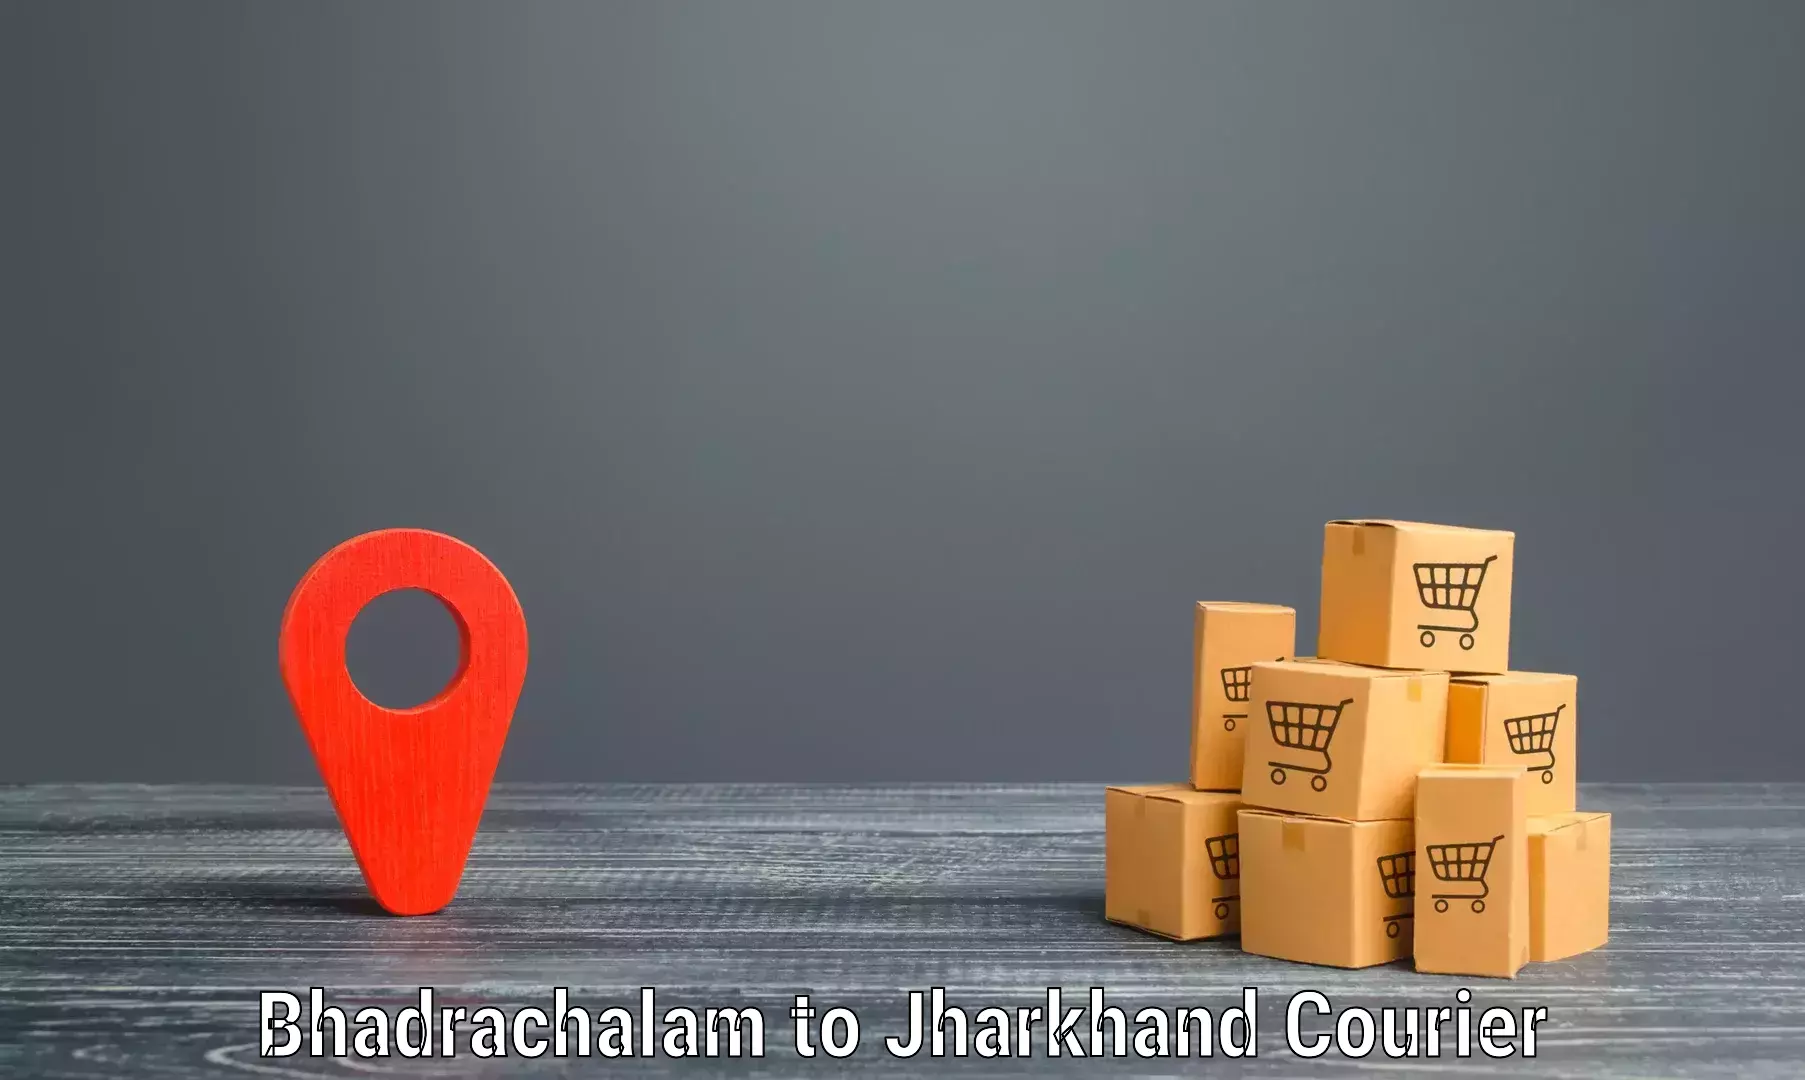 Express courier capabilities in Bhadrachalam to Seraikela Kharsawan